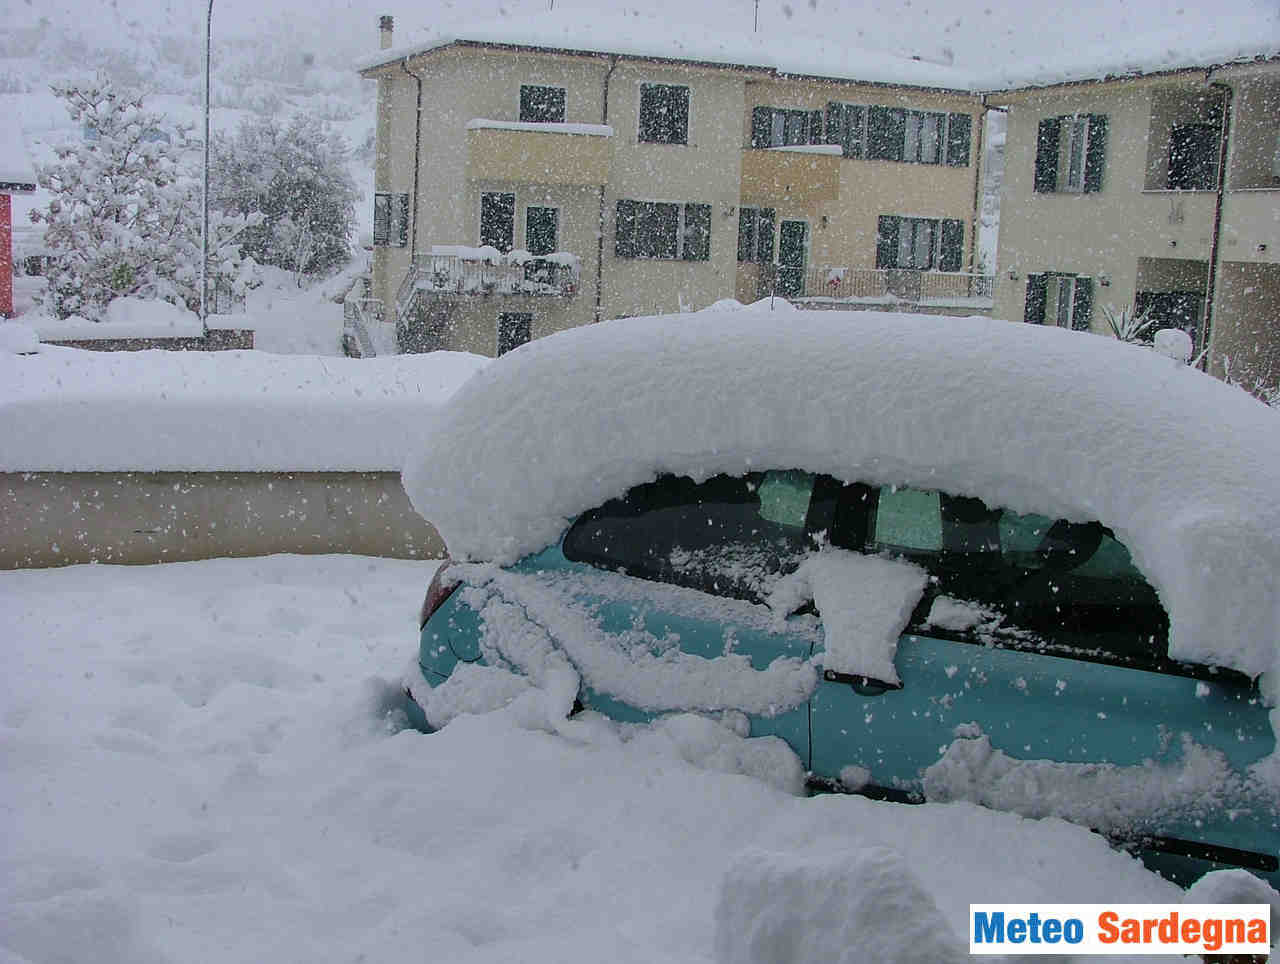 meteo 00001 - Prossimo Inverno, analisi meteo climatica sul rischio neve in Sardegna